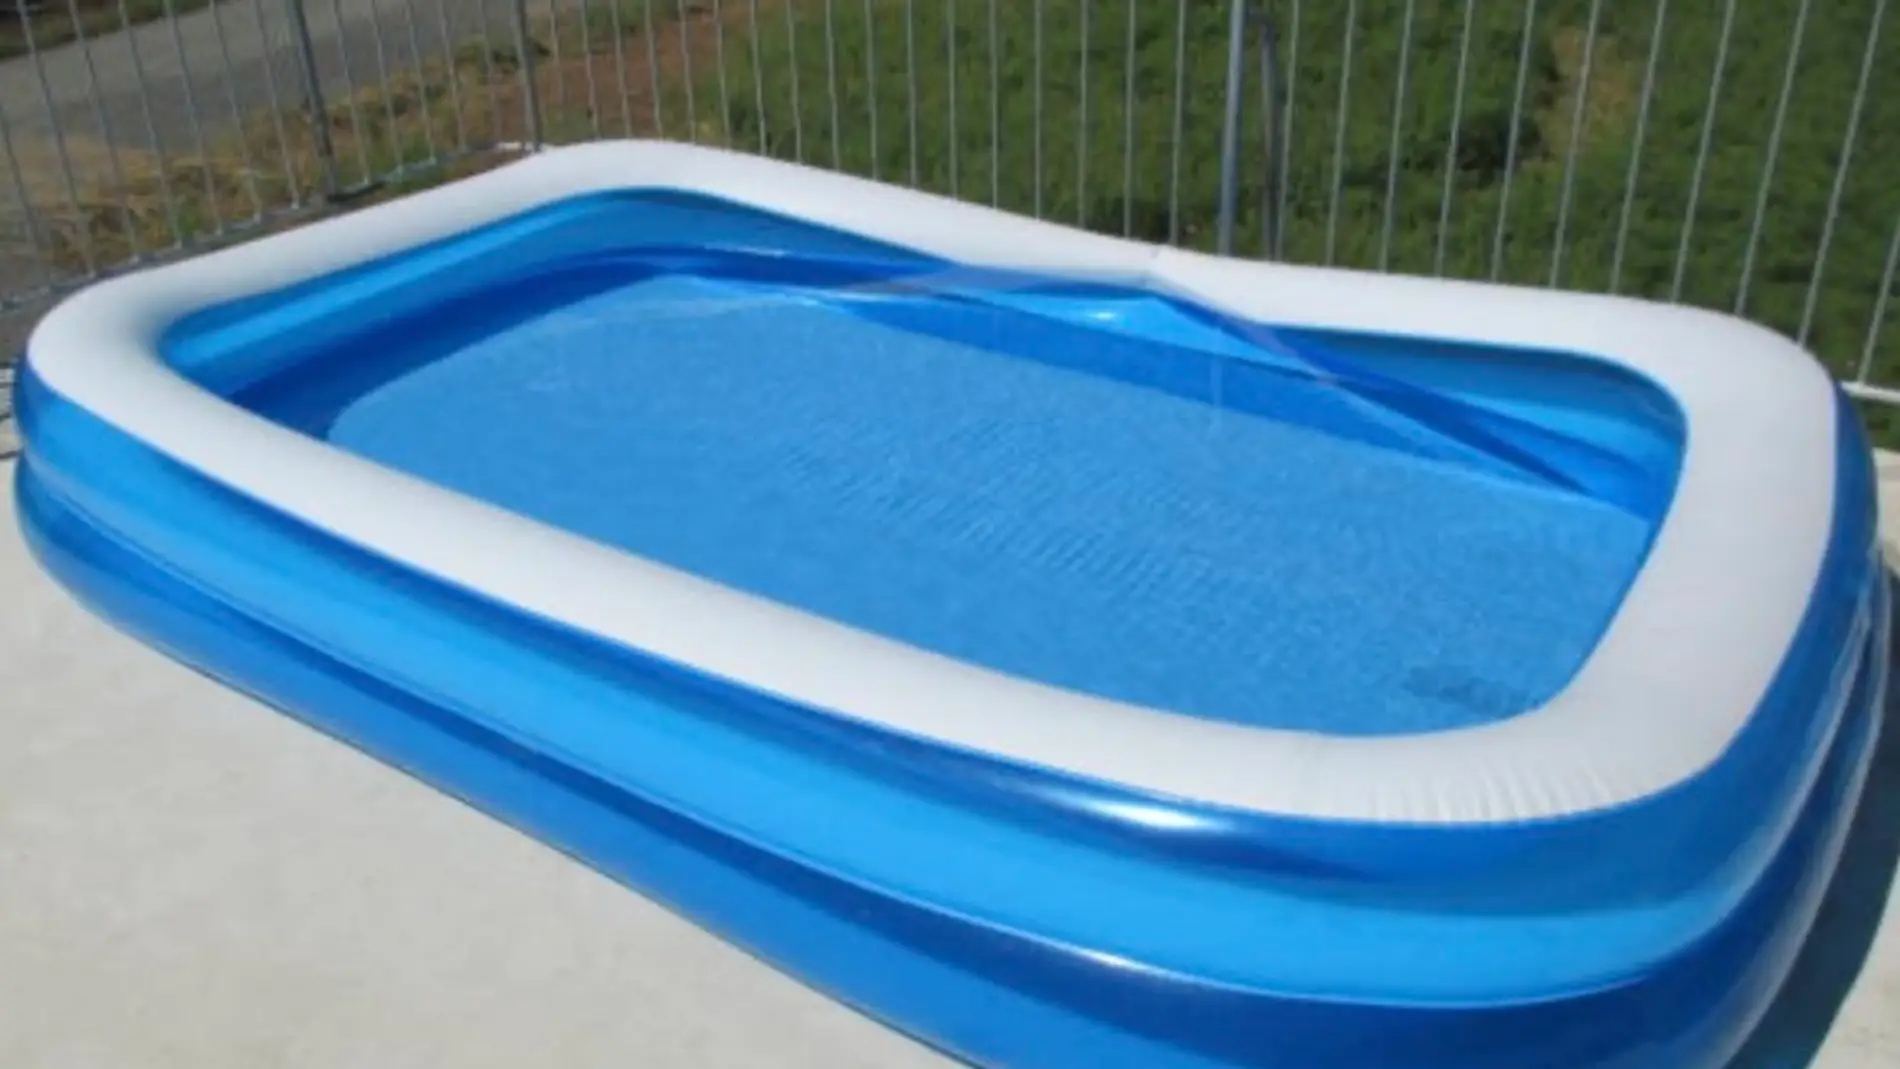 ¿Es legal poner una piscina en la terraza? Este es el peso permitido